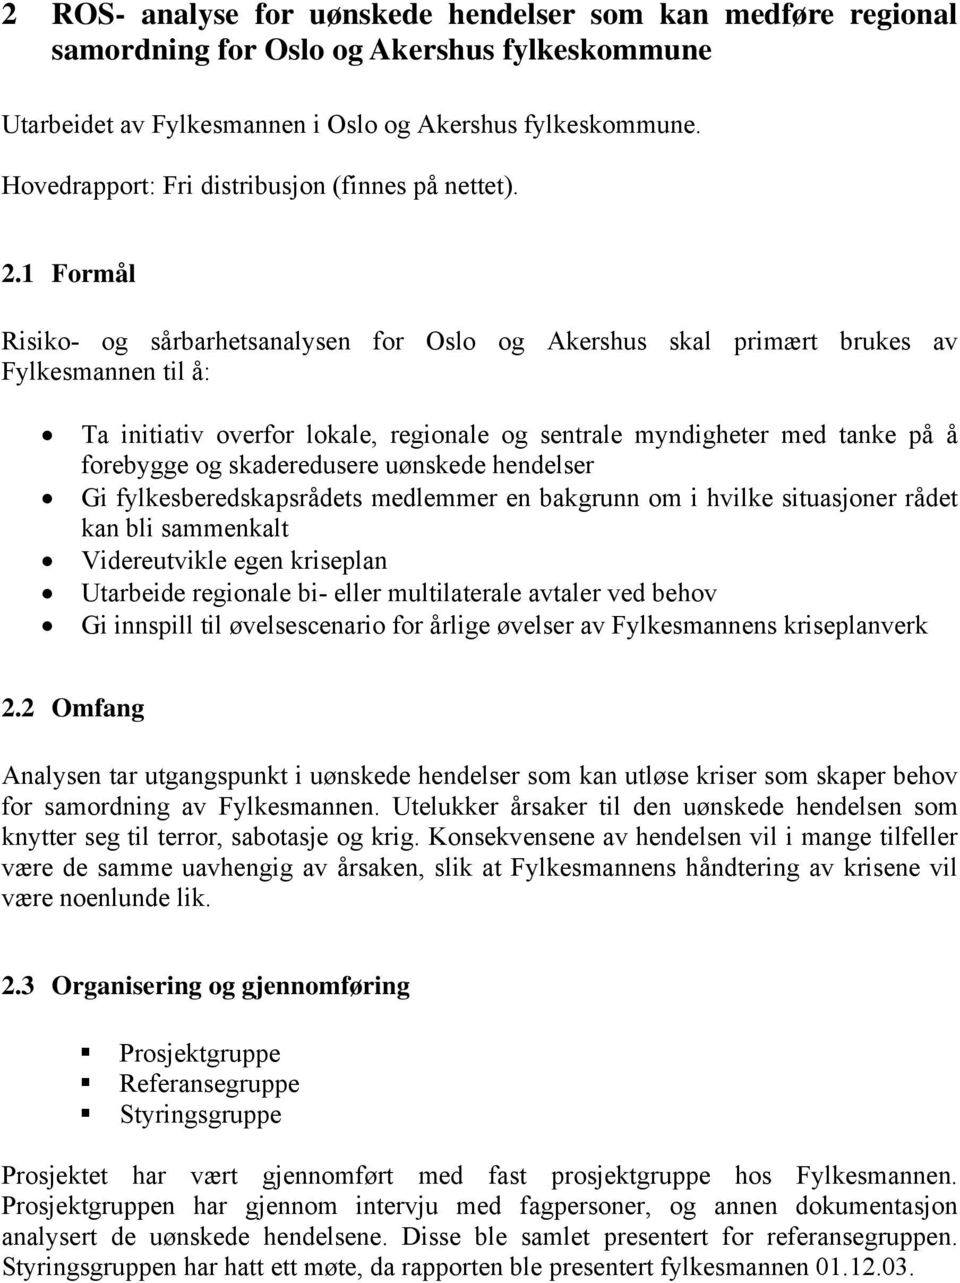 1 Formål Risiko- og sårbarhetsanalysen for Oslo og Akershus skal primært brukes av Fylkesmannen til å: Ta initiativ overfor lokale, regionale og sentrale myndigheter med tanke på å forebygge og